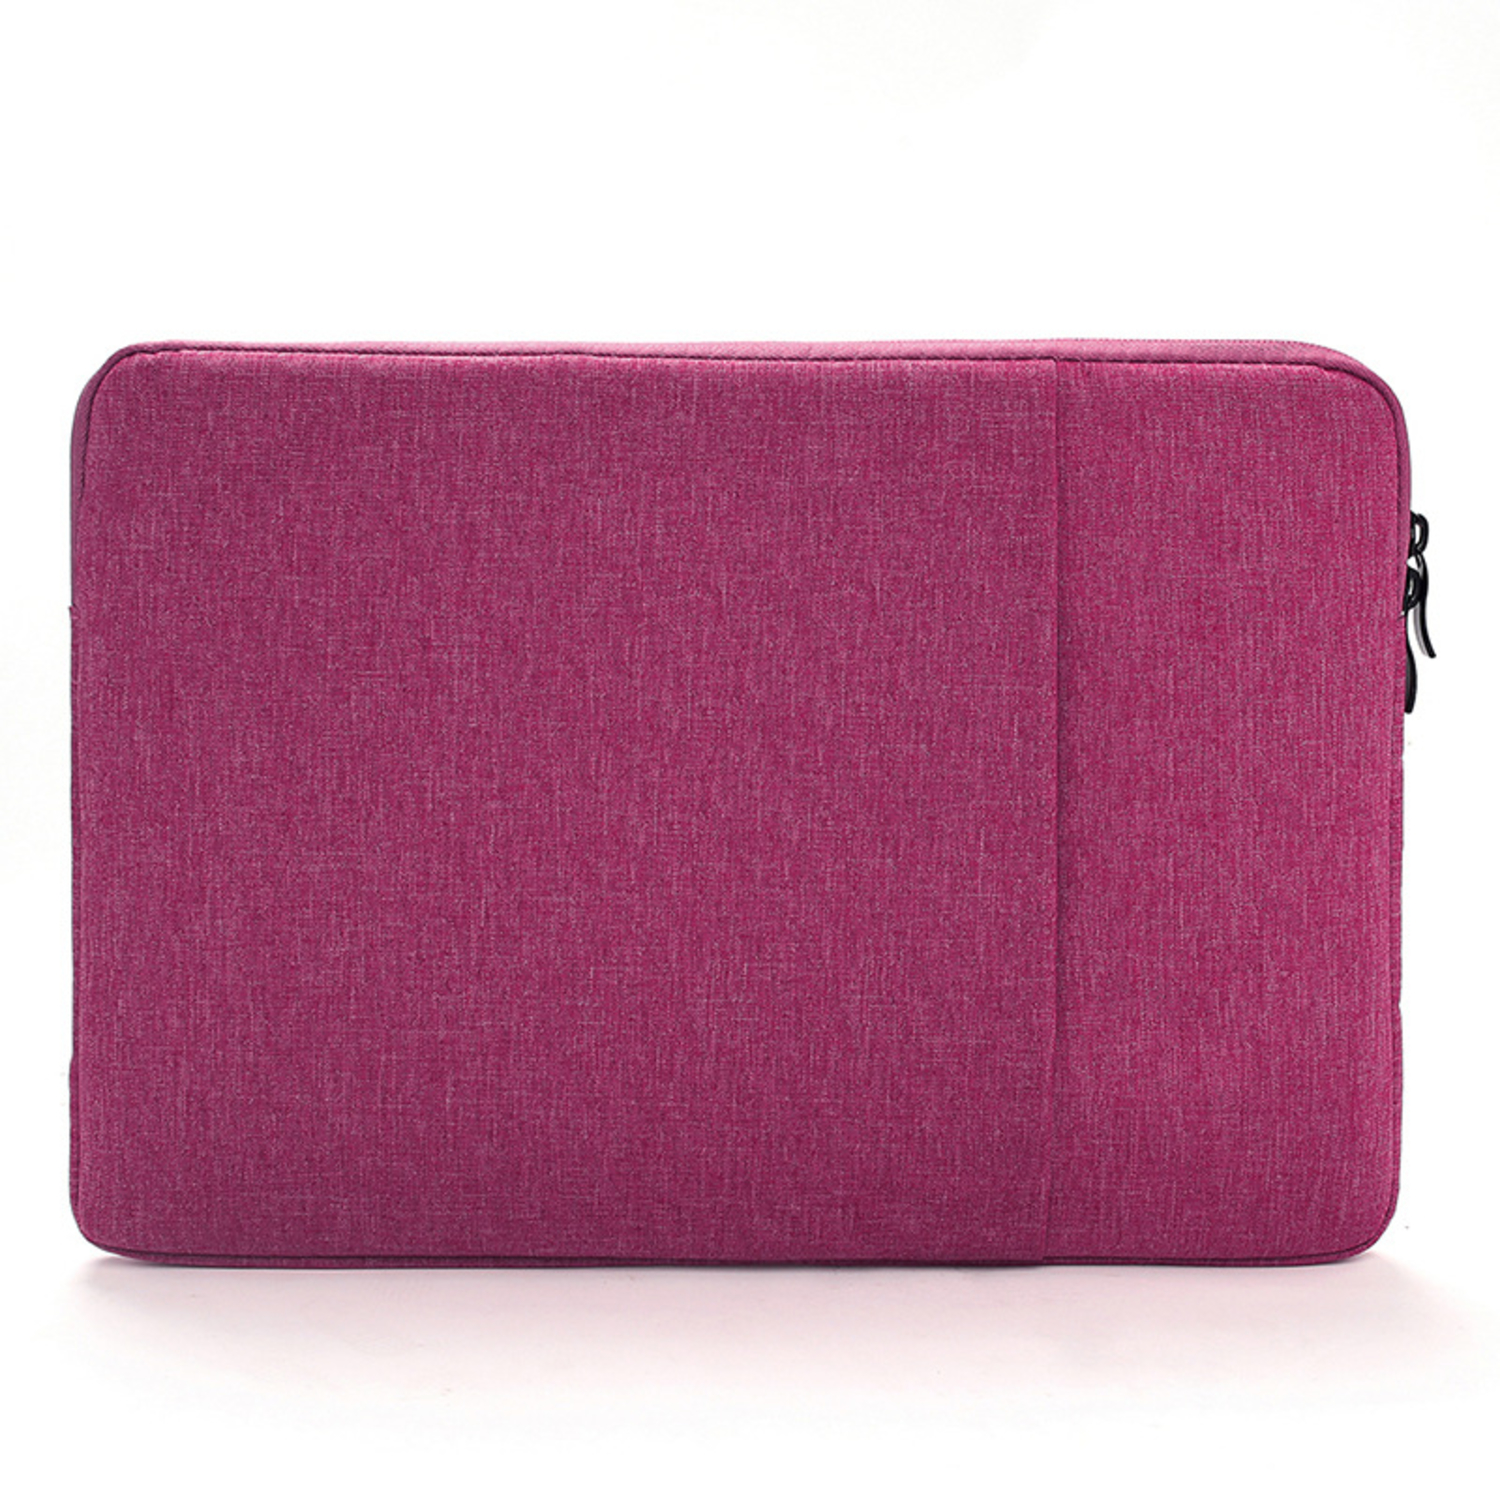 HBASICS Laptop Tasche für 15 Kunstoff, Notebook Sleeve für Zoll Laptop Pink Fuchsia Notebooksleeve